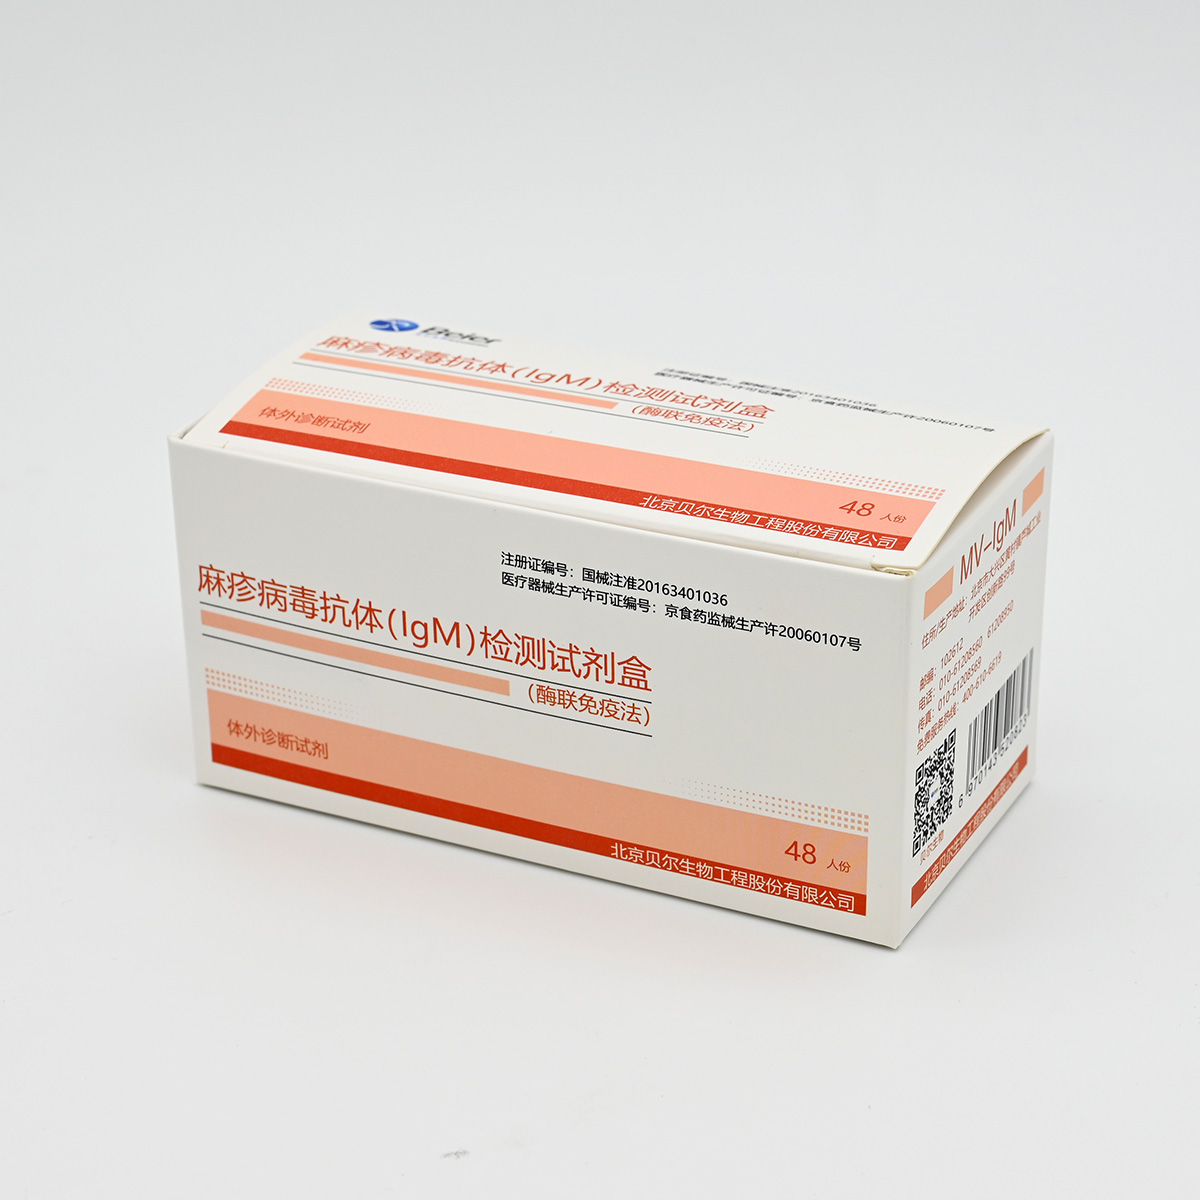 【贝尔】麻疹病毒抗体(IgM)检测试剂盒(酶联免疫法)